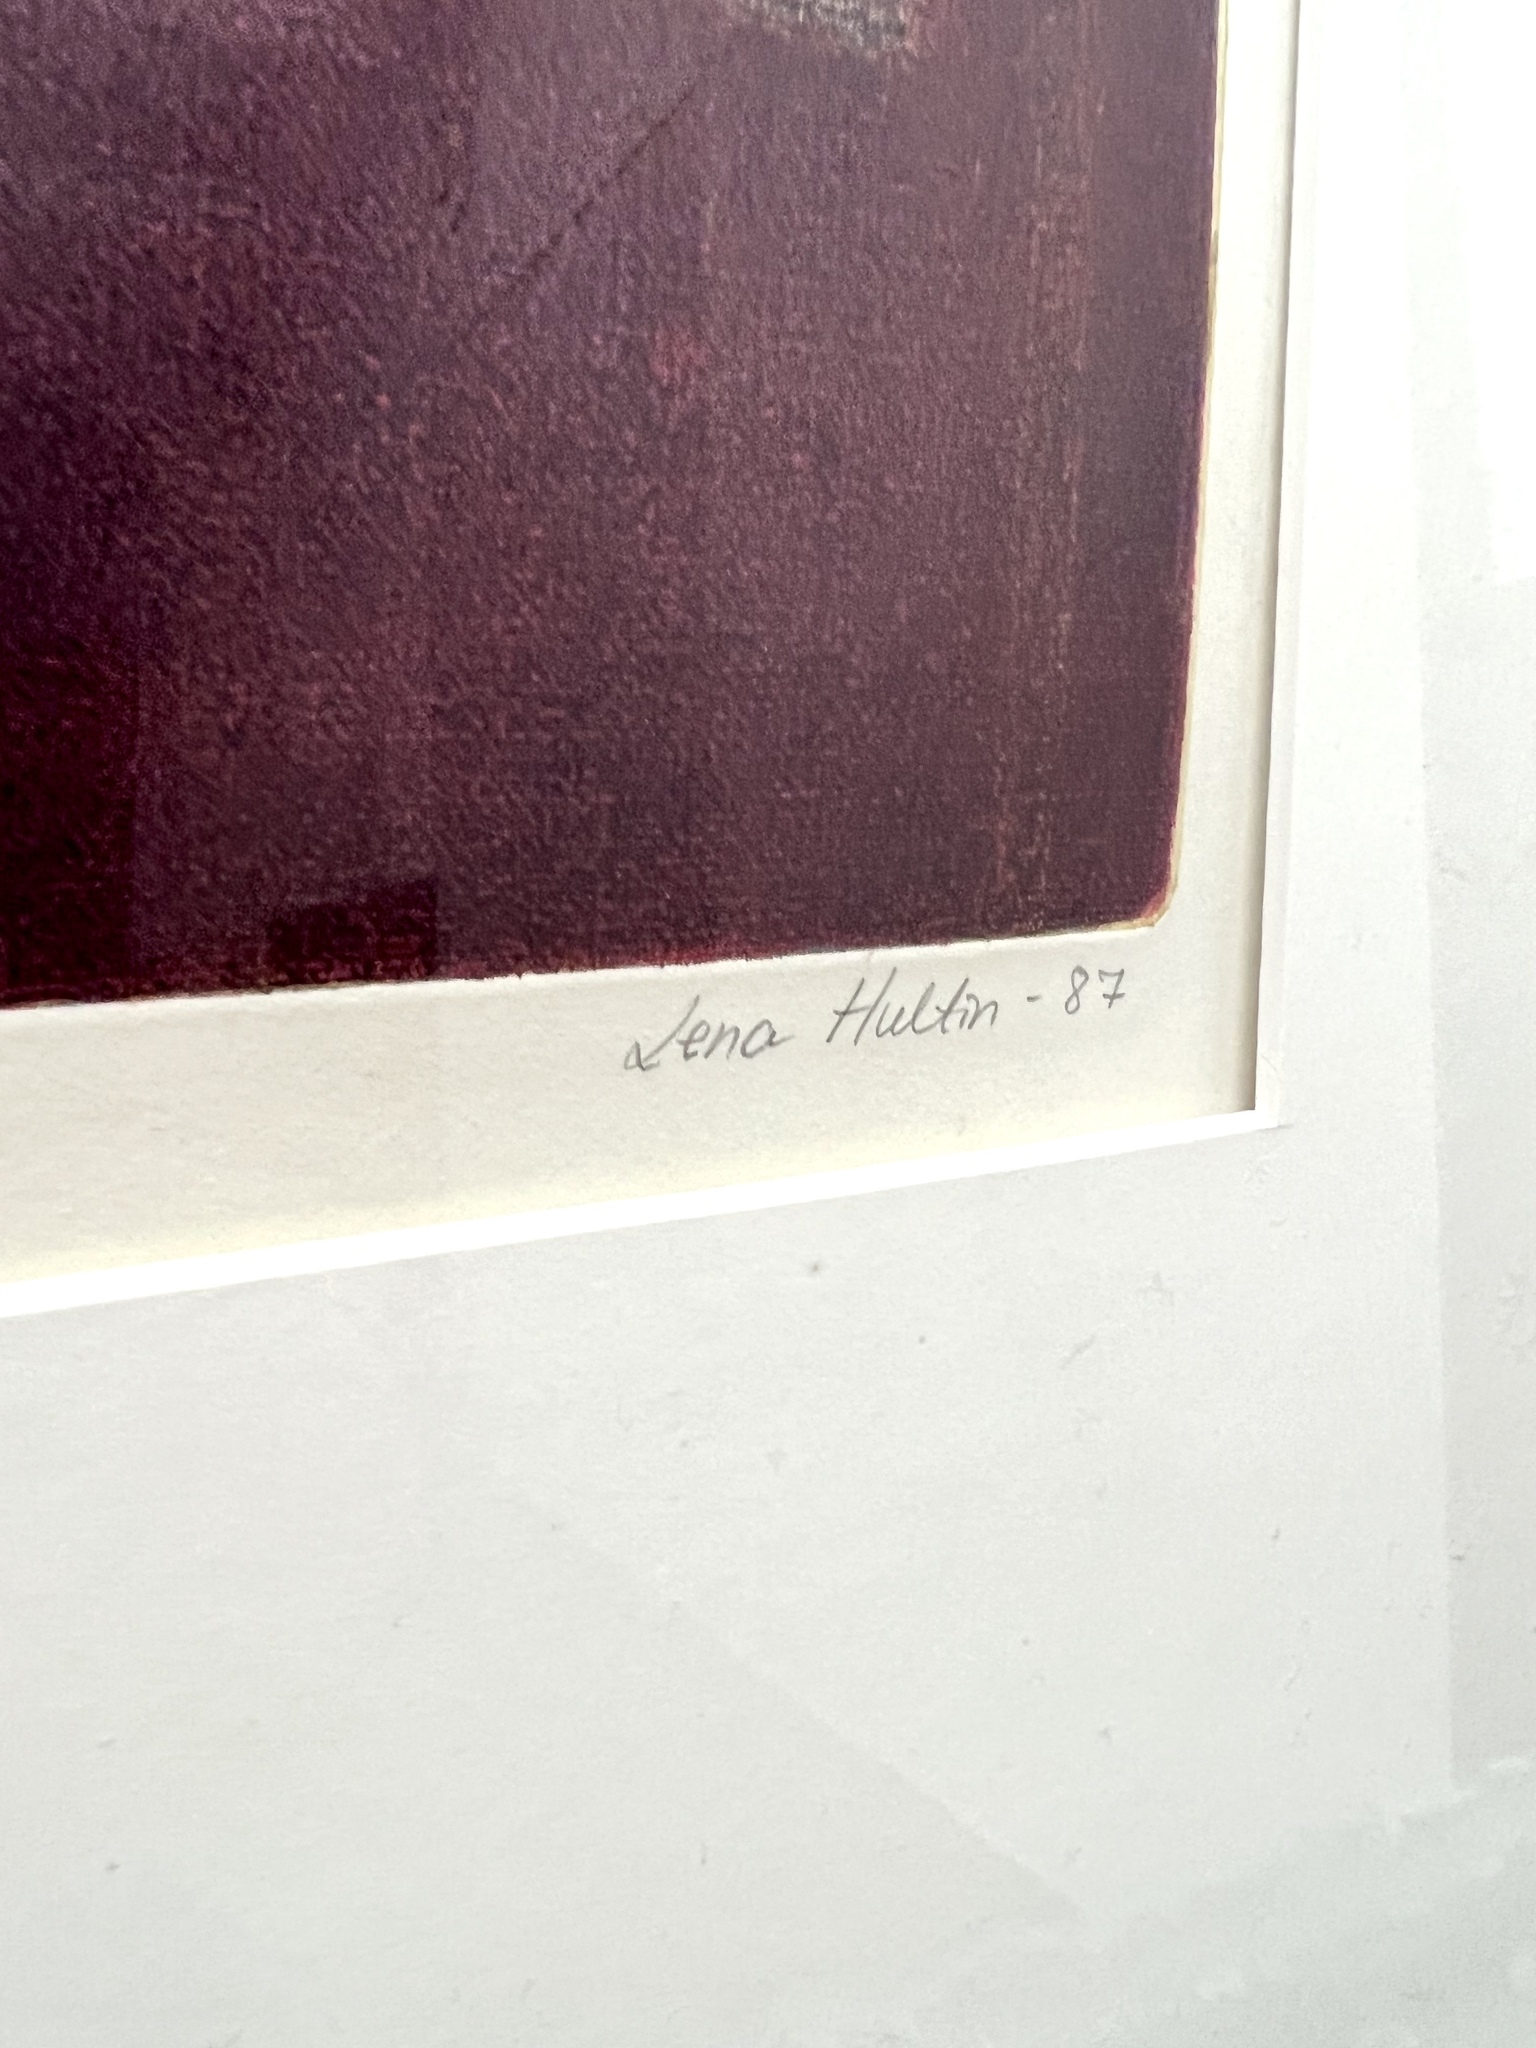 "Harrys Hus" Ramad etsning av Lena Hultin. 67x81,5 cm